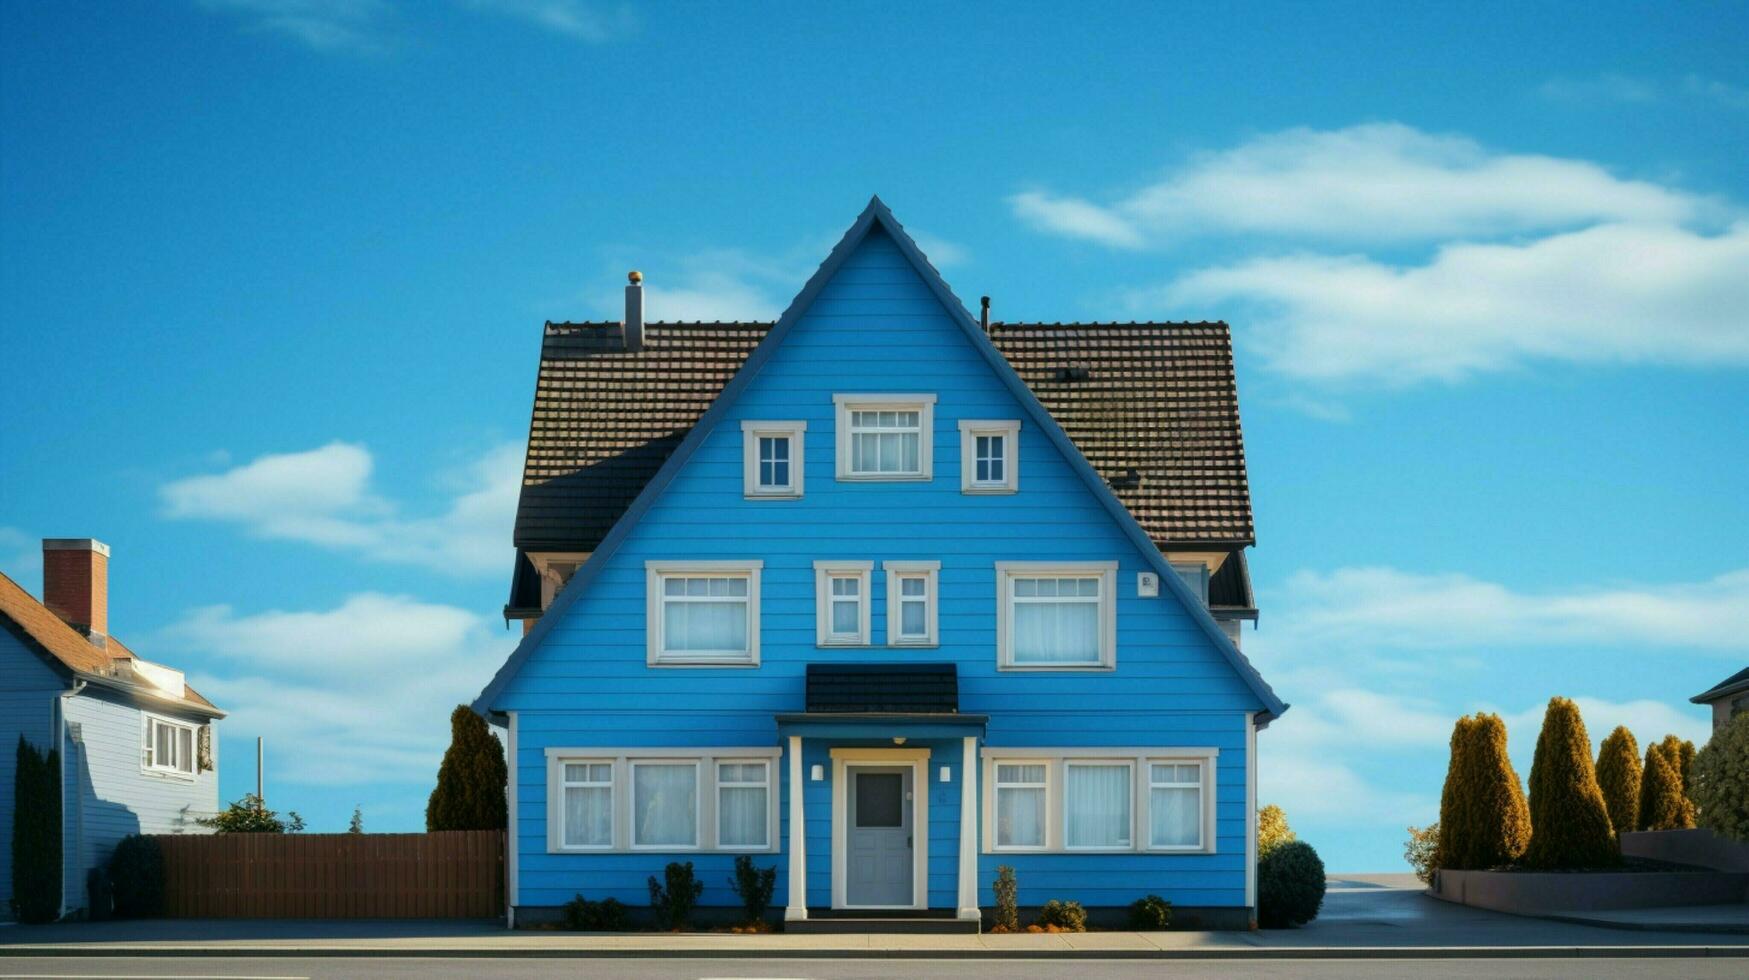 uma casa com uma azul cobertura e uma azul cobertura foto